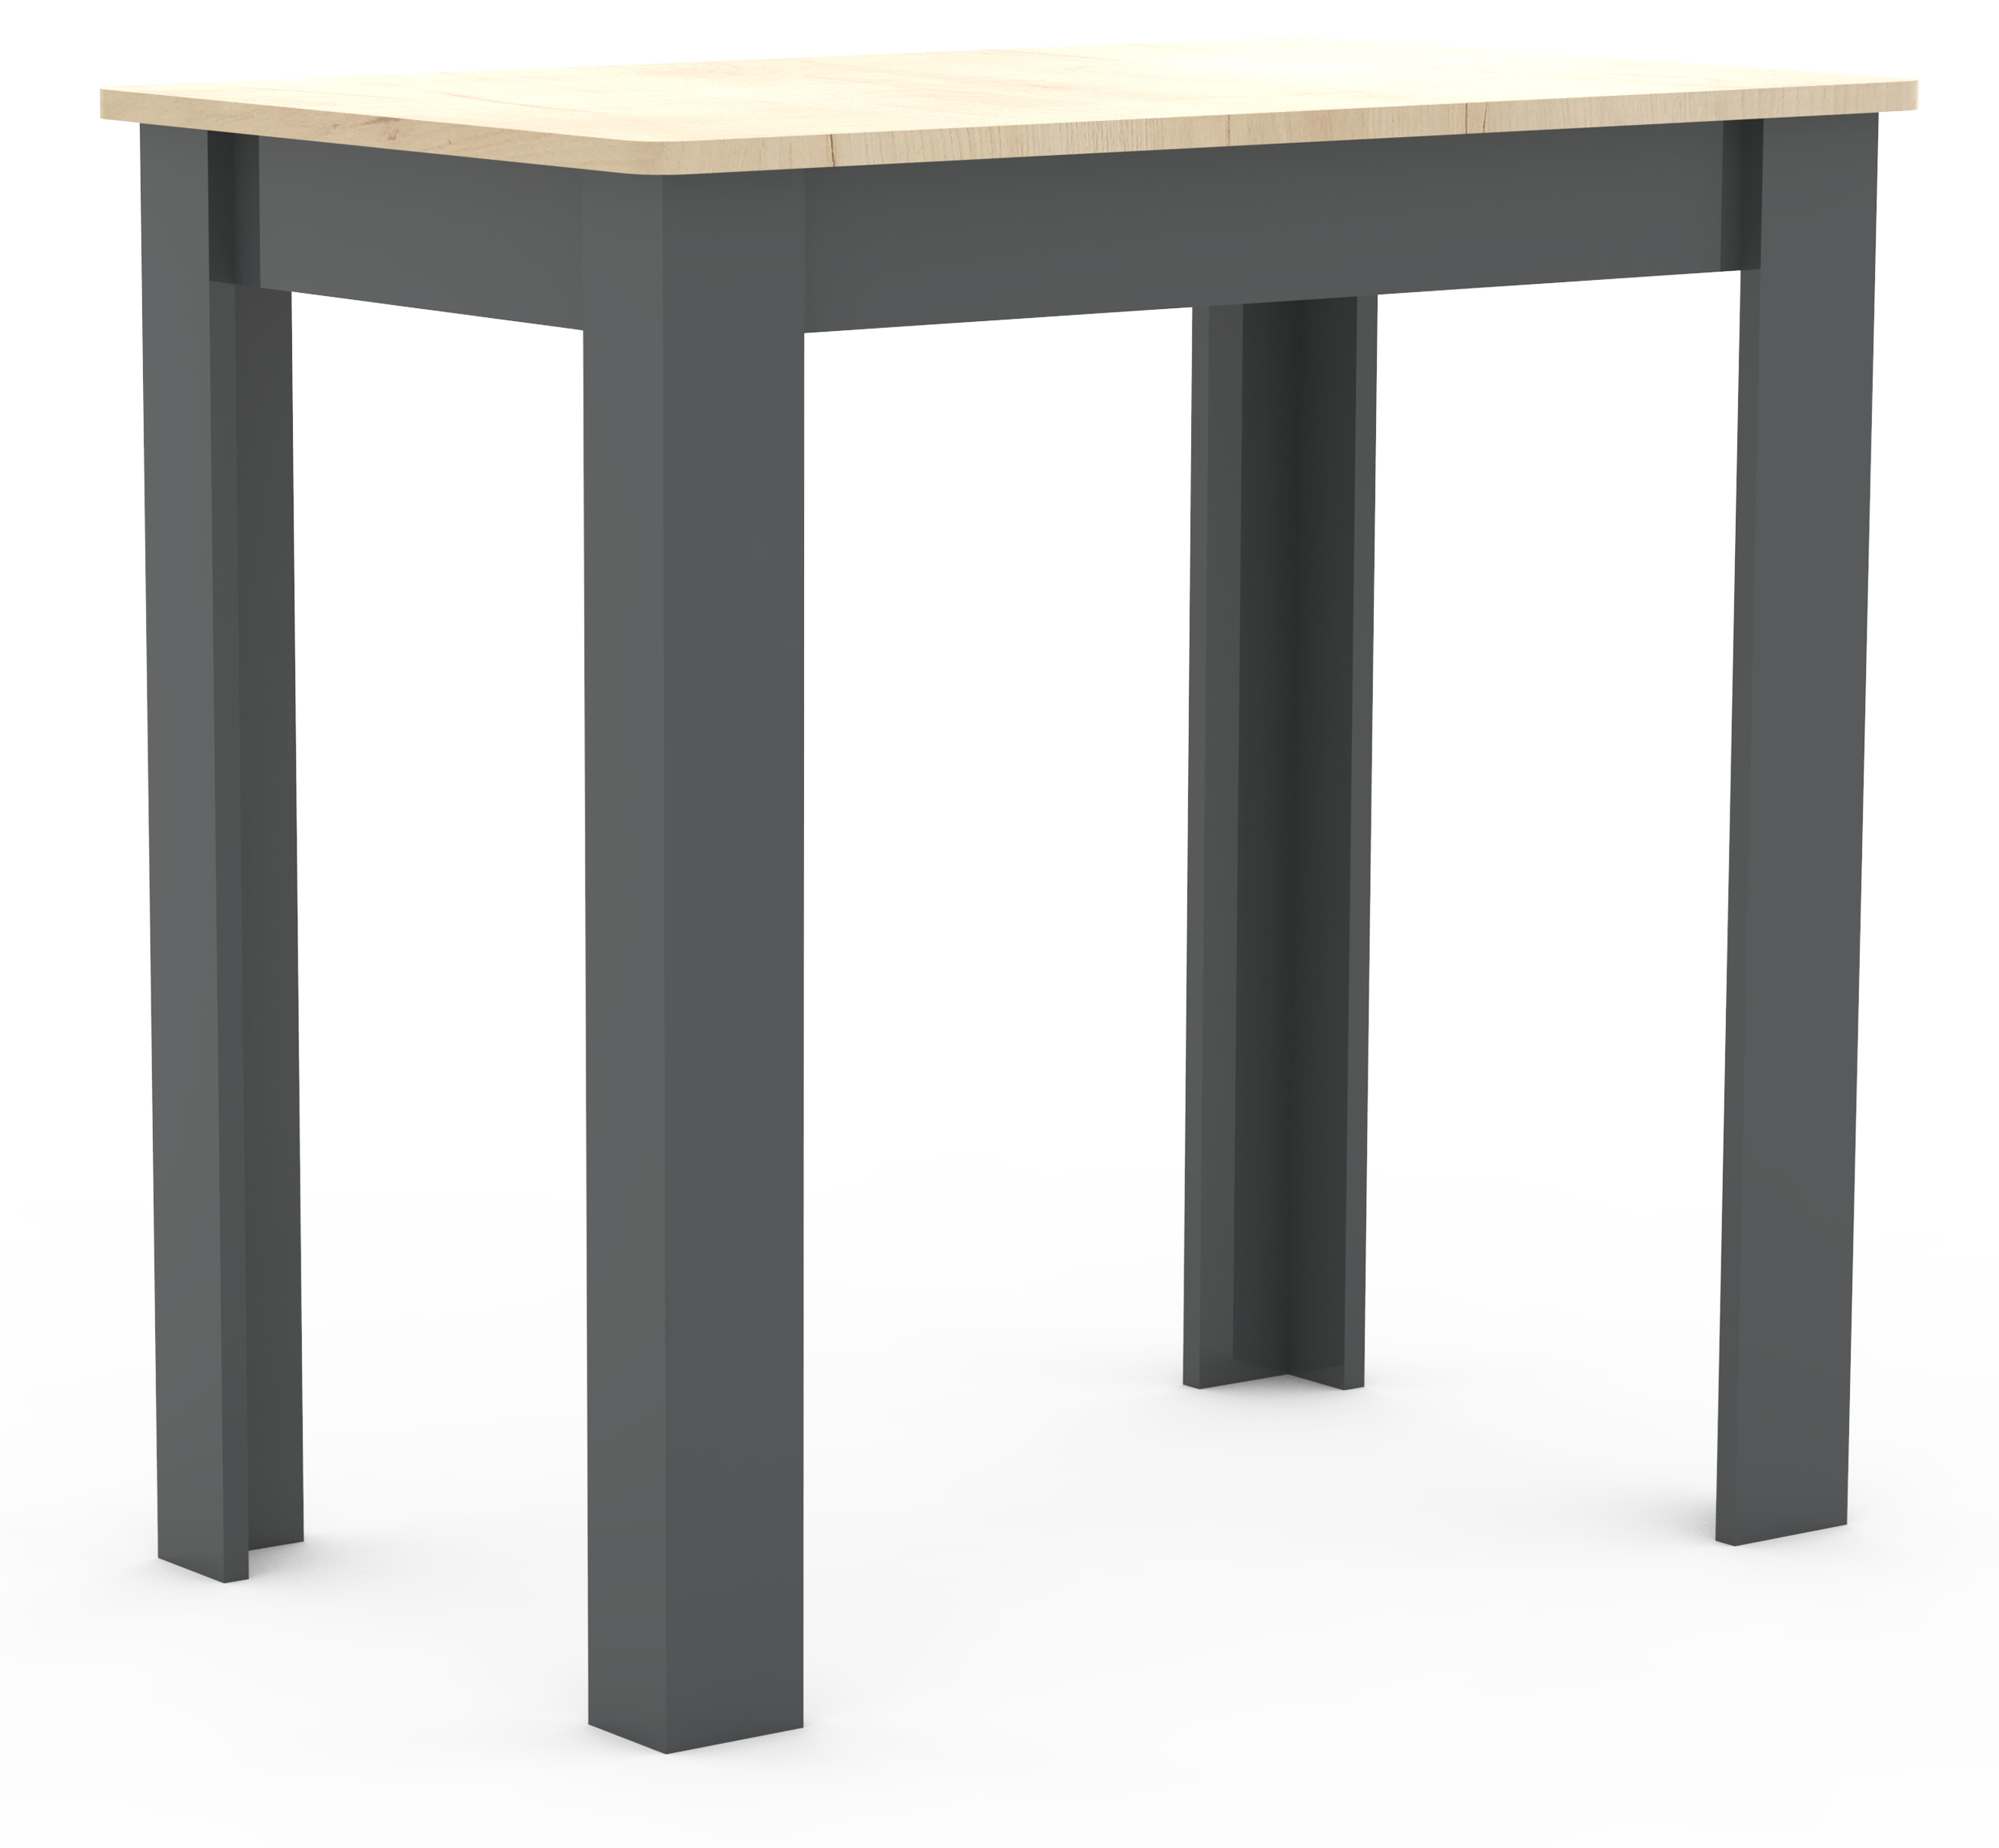 VCM NORDIC Esal 80 matbord, rektangulärt - naturligt och antracitgrått trä